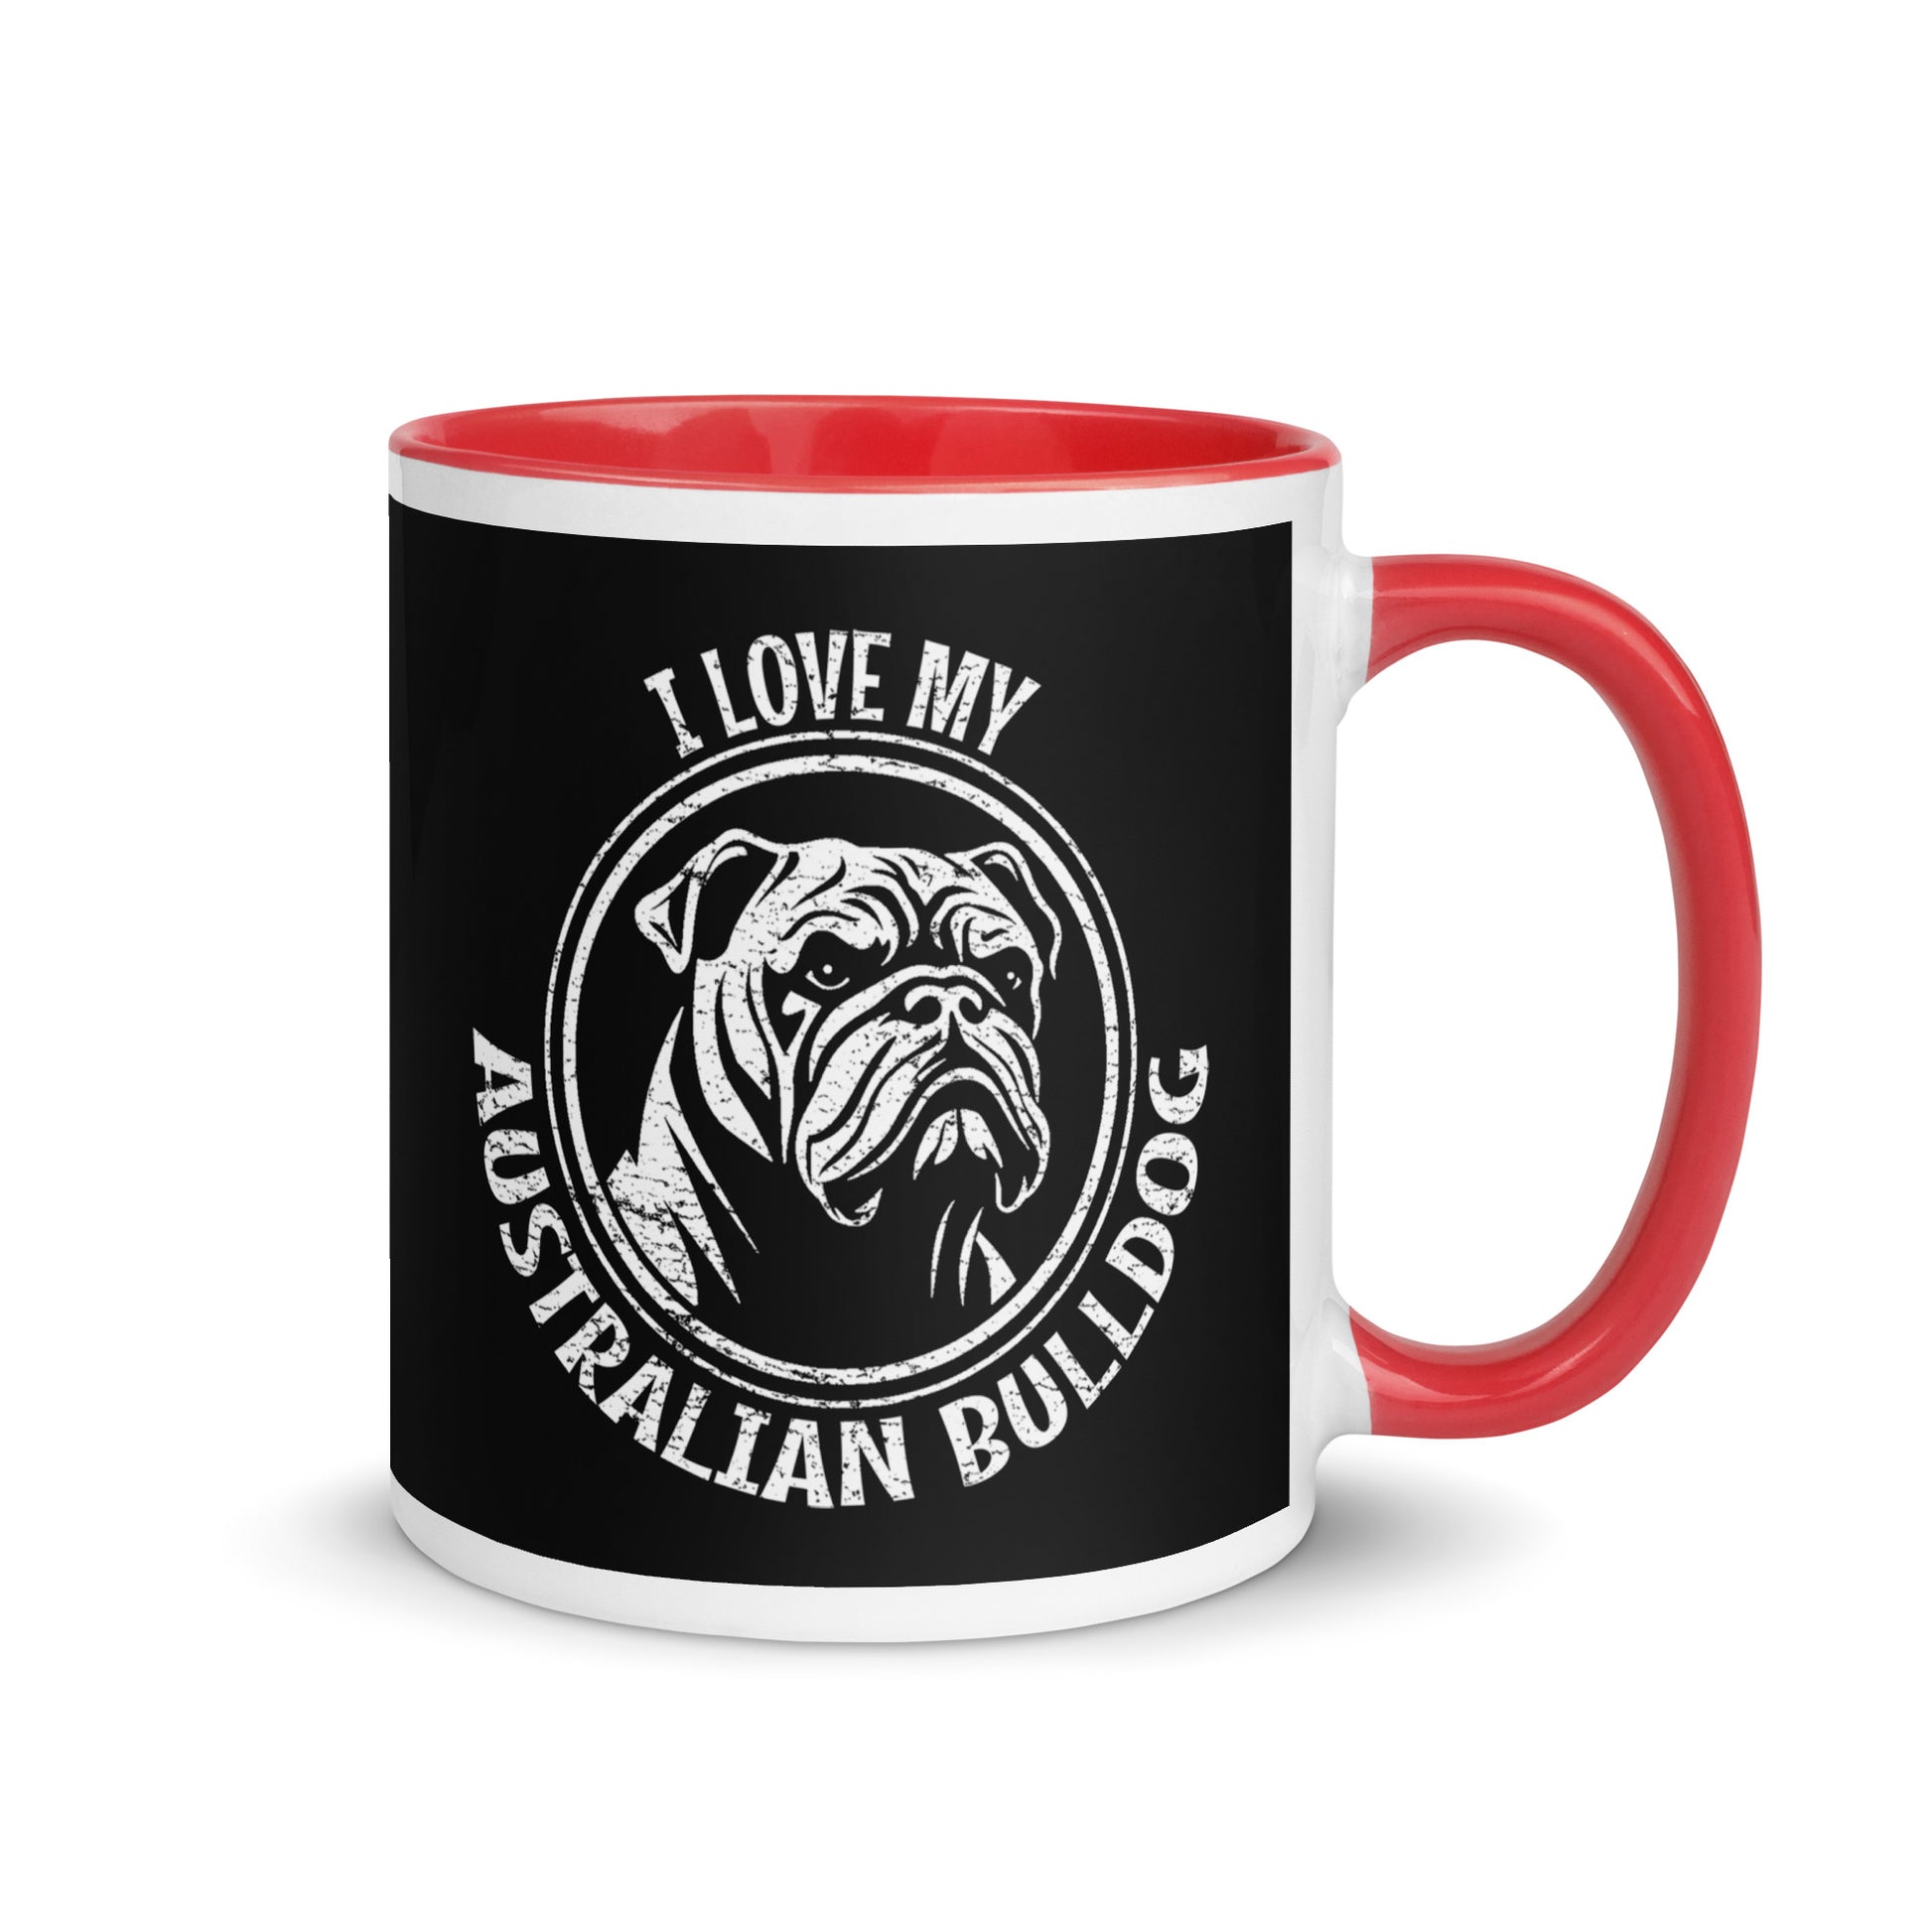 Australian Bulldog Mug, Australian Bulldog gift, gift for dog mom, custom dog gift, dog owner gift, pet memorial gift